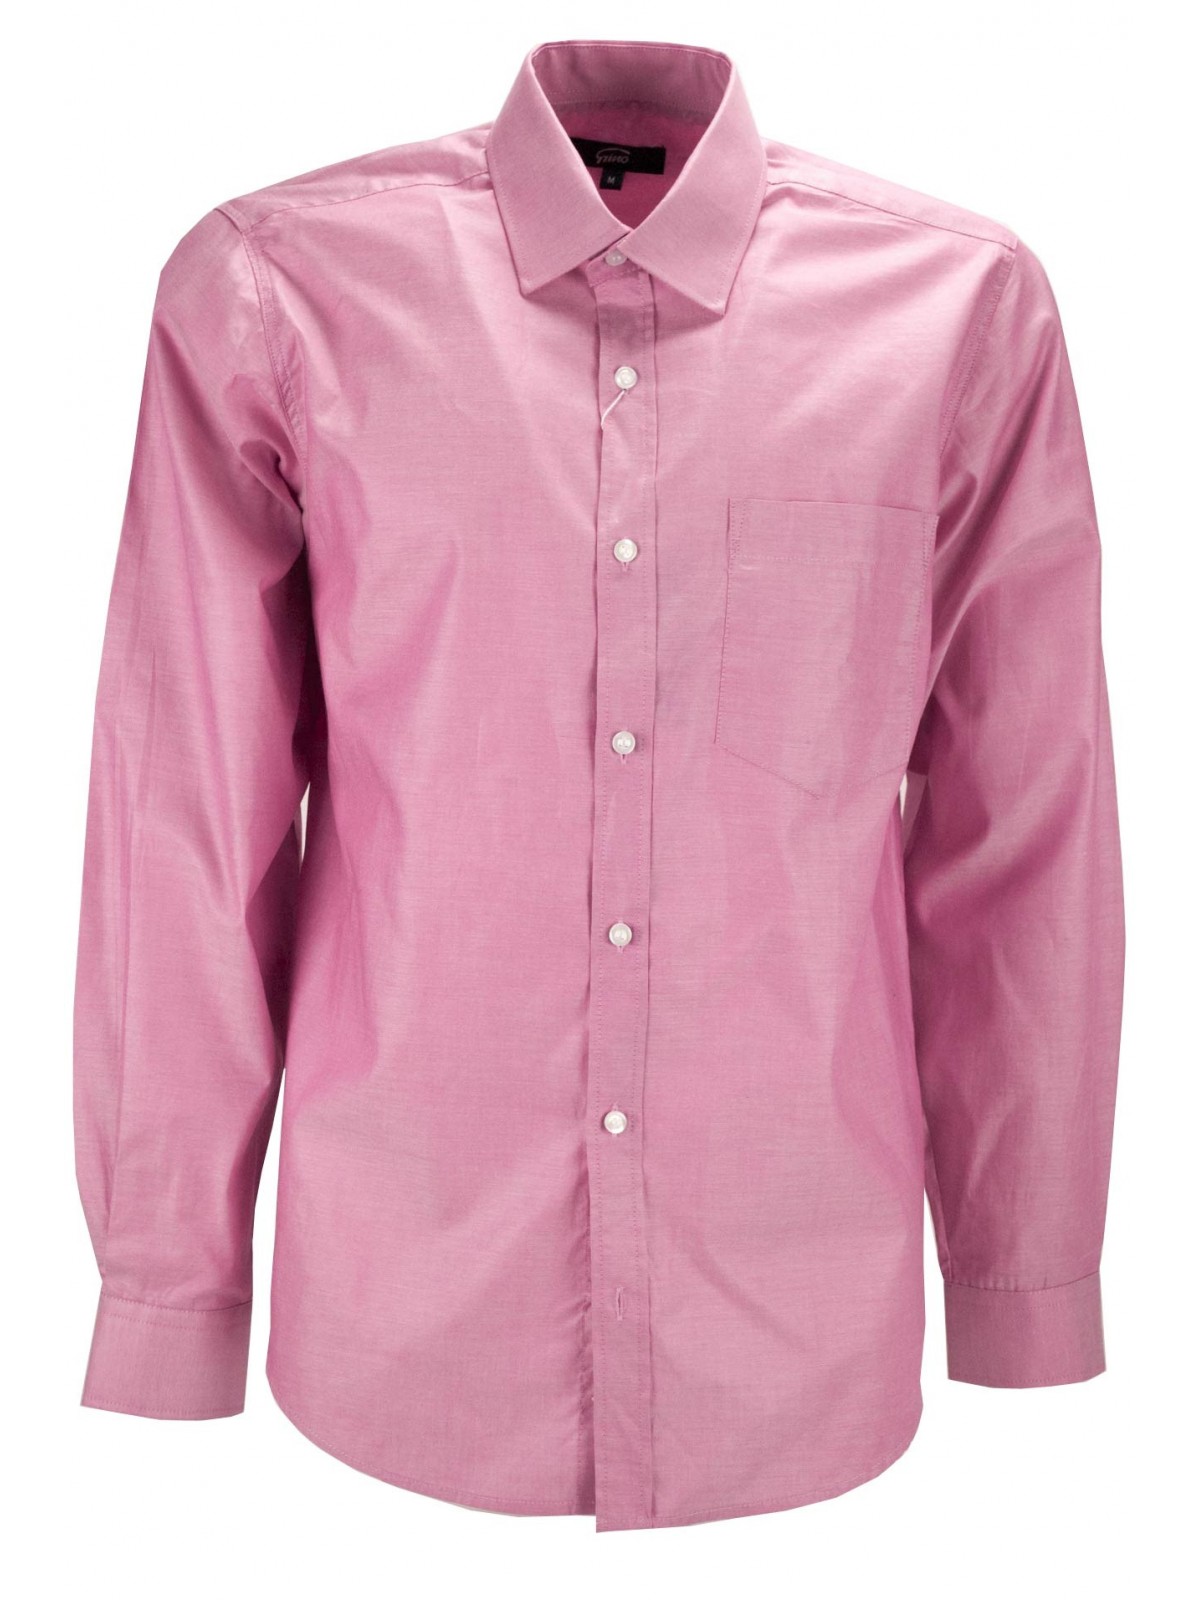 Camisa Hombre Rosa Coral Cuello Abierto - M 40-41 - slim fit